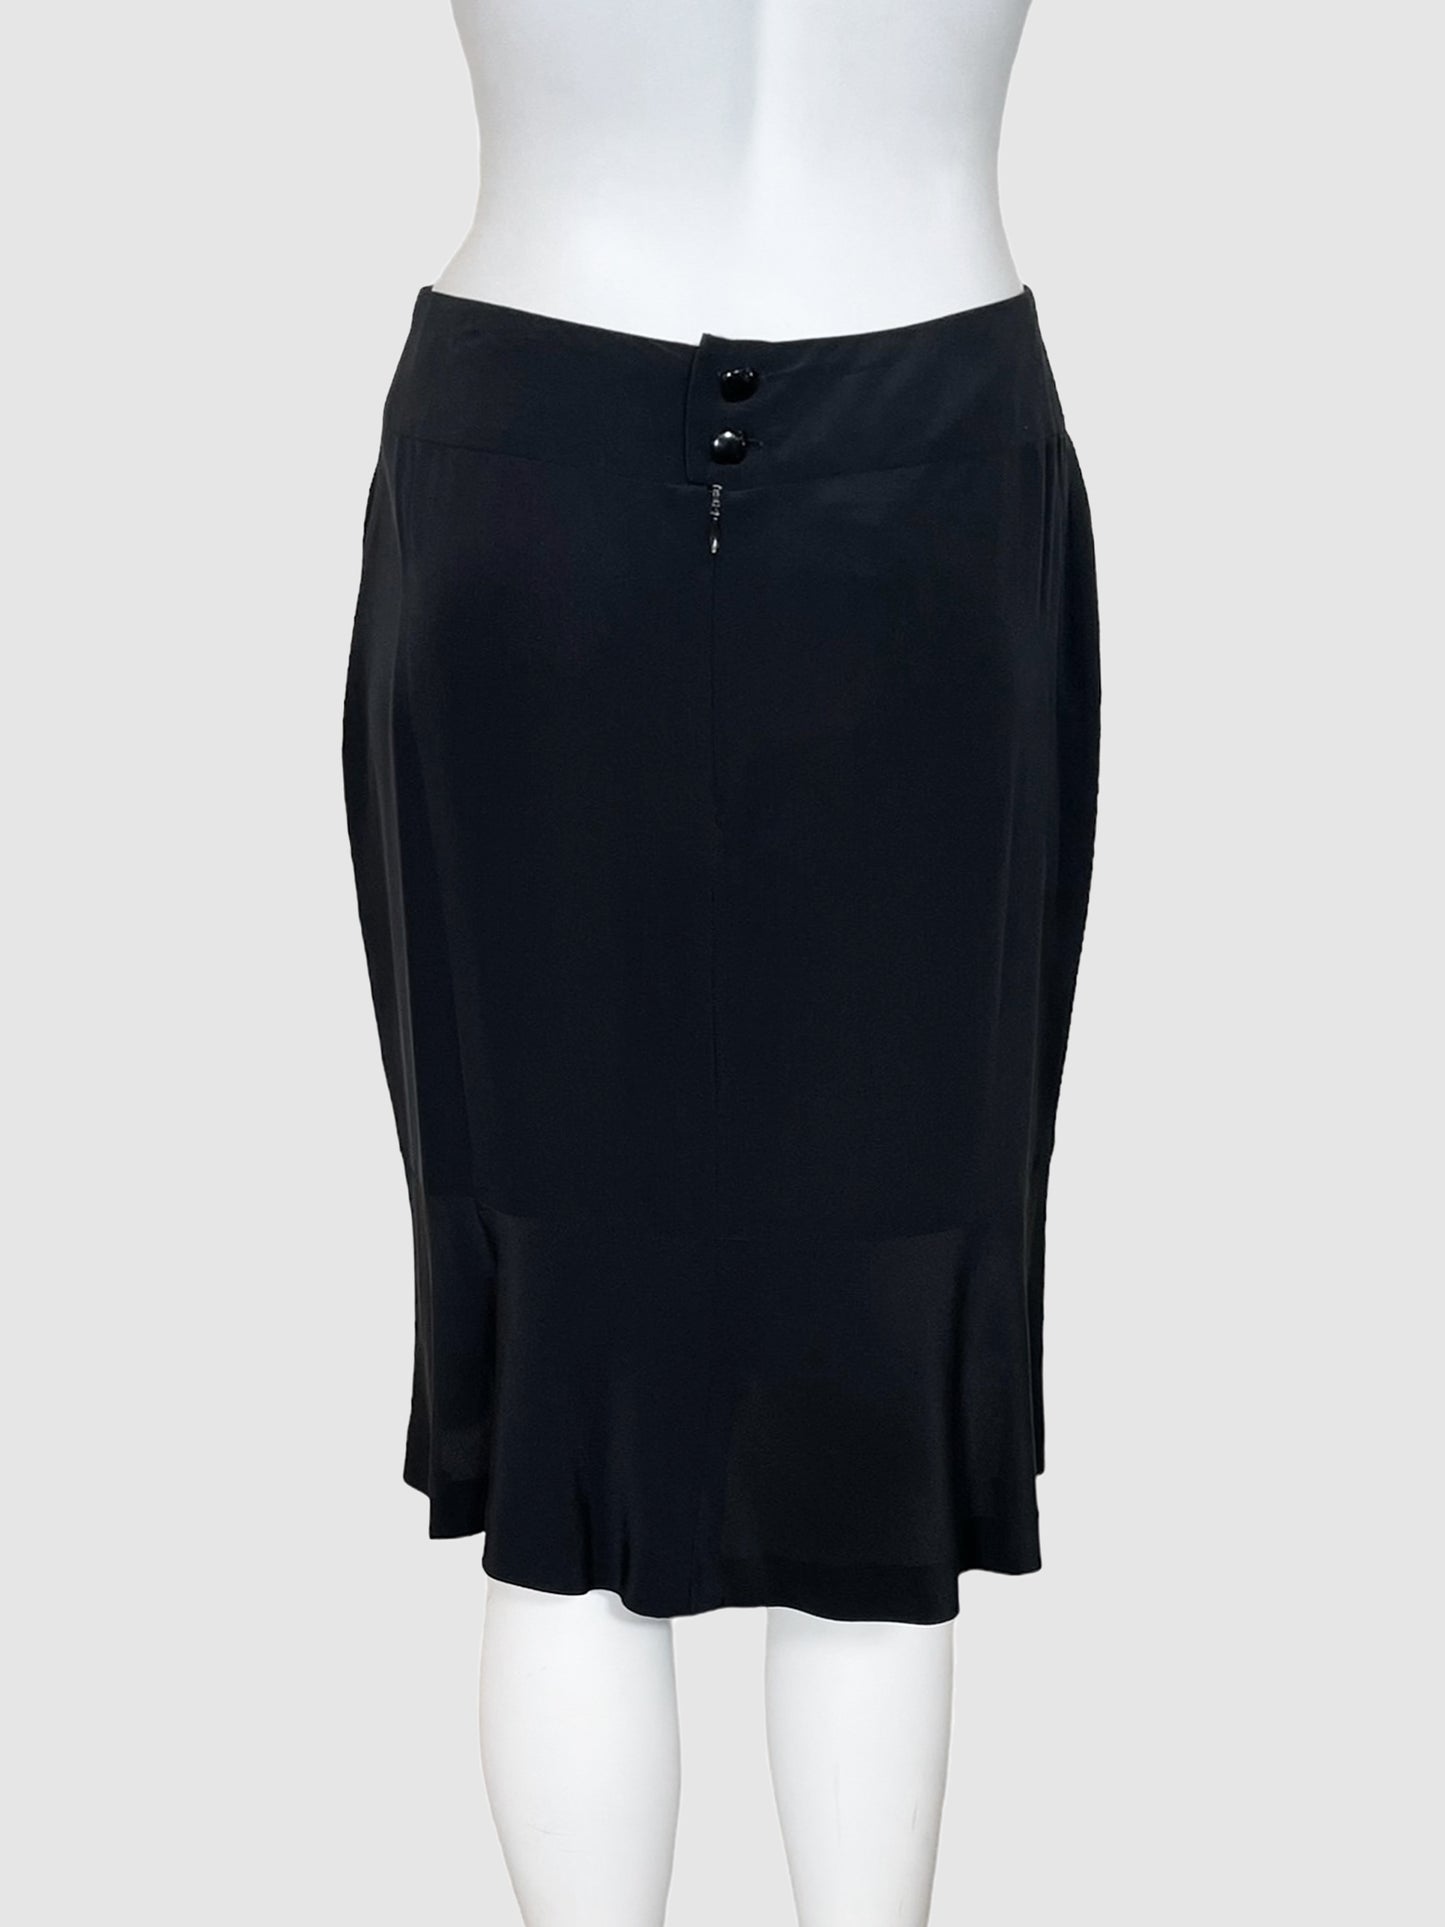 Chanel Silk Knee-Length Skirt - Size 38